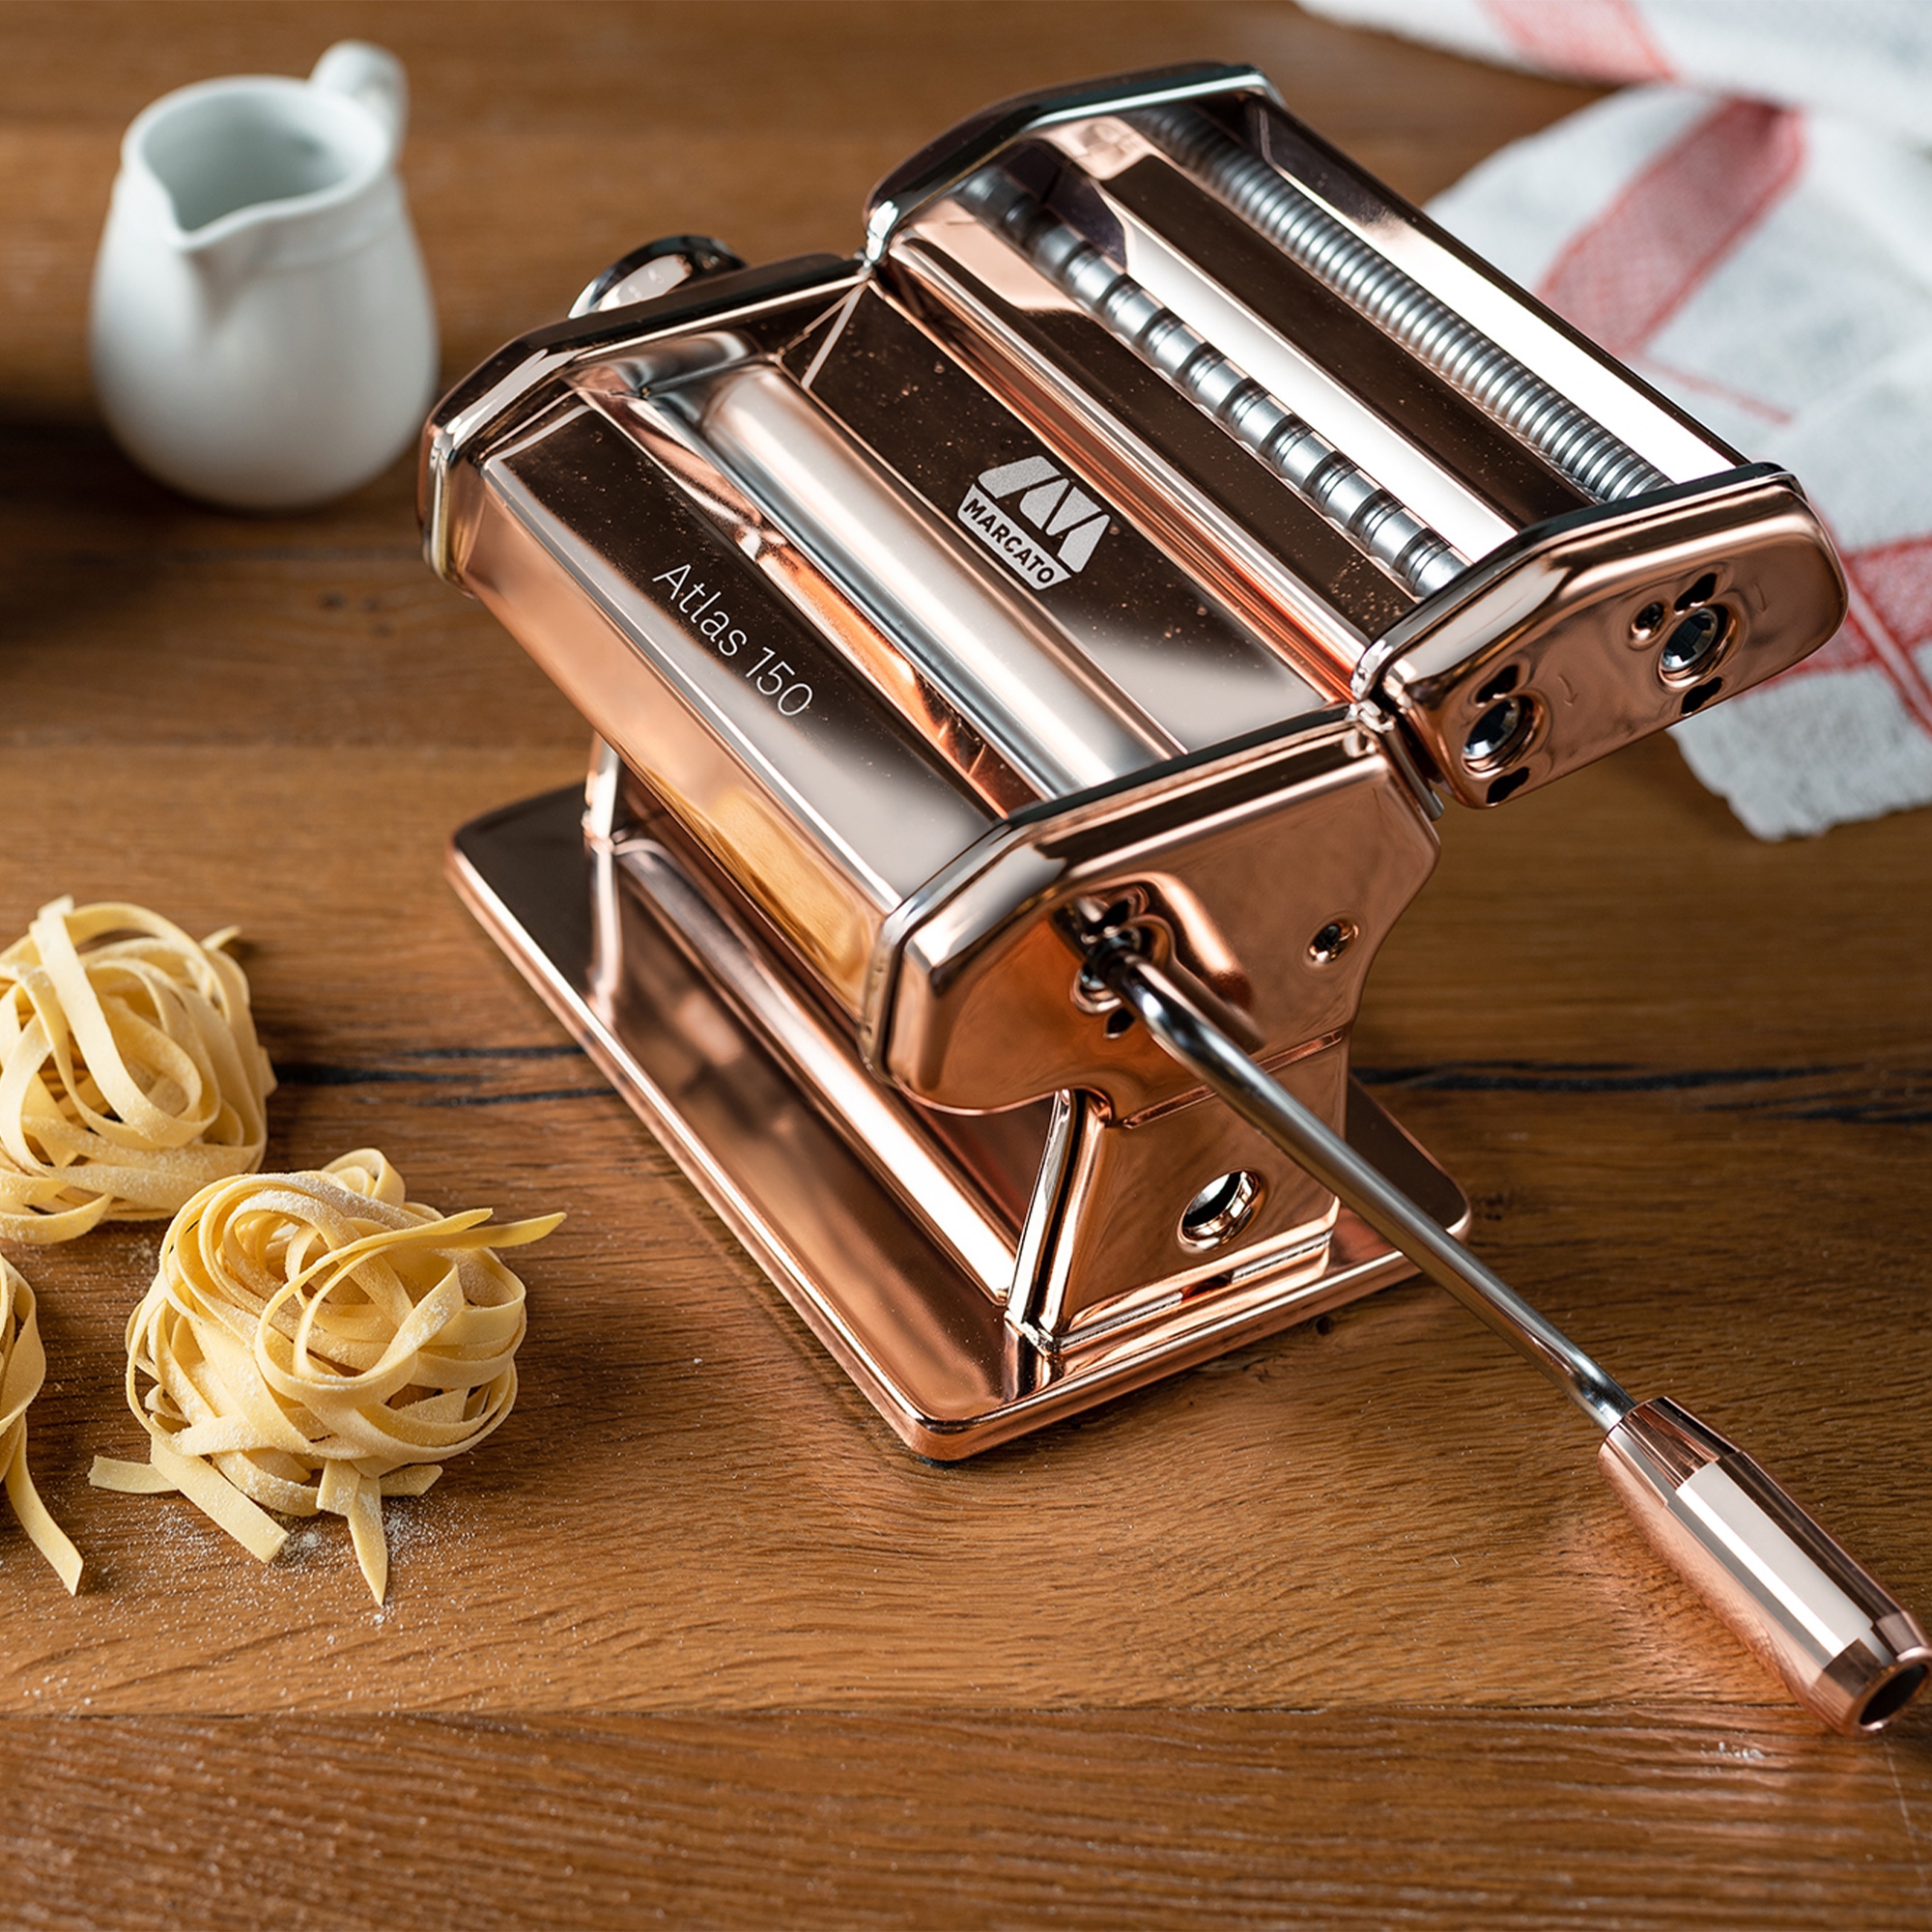 Marcato Atlas 150 pasta maker, copper